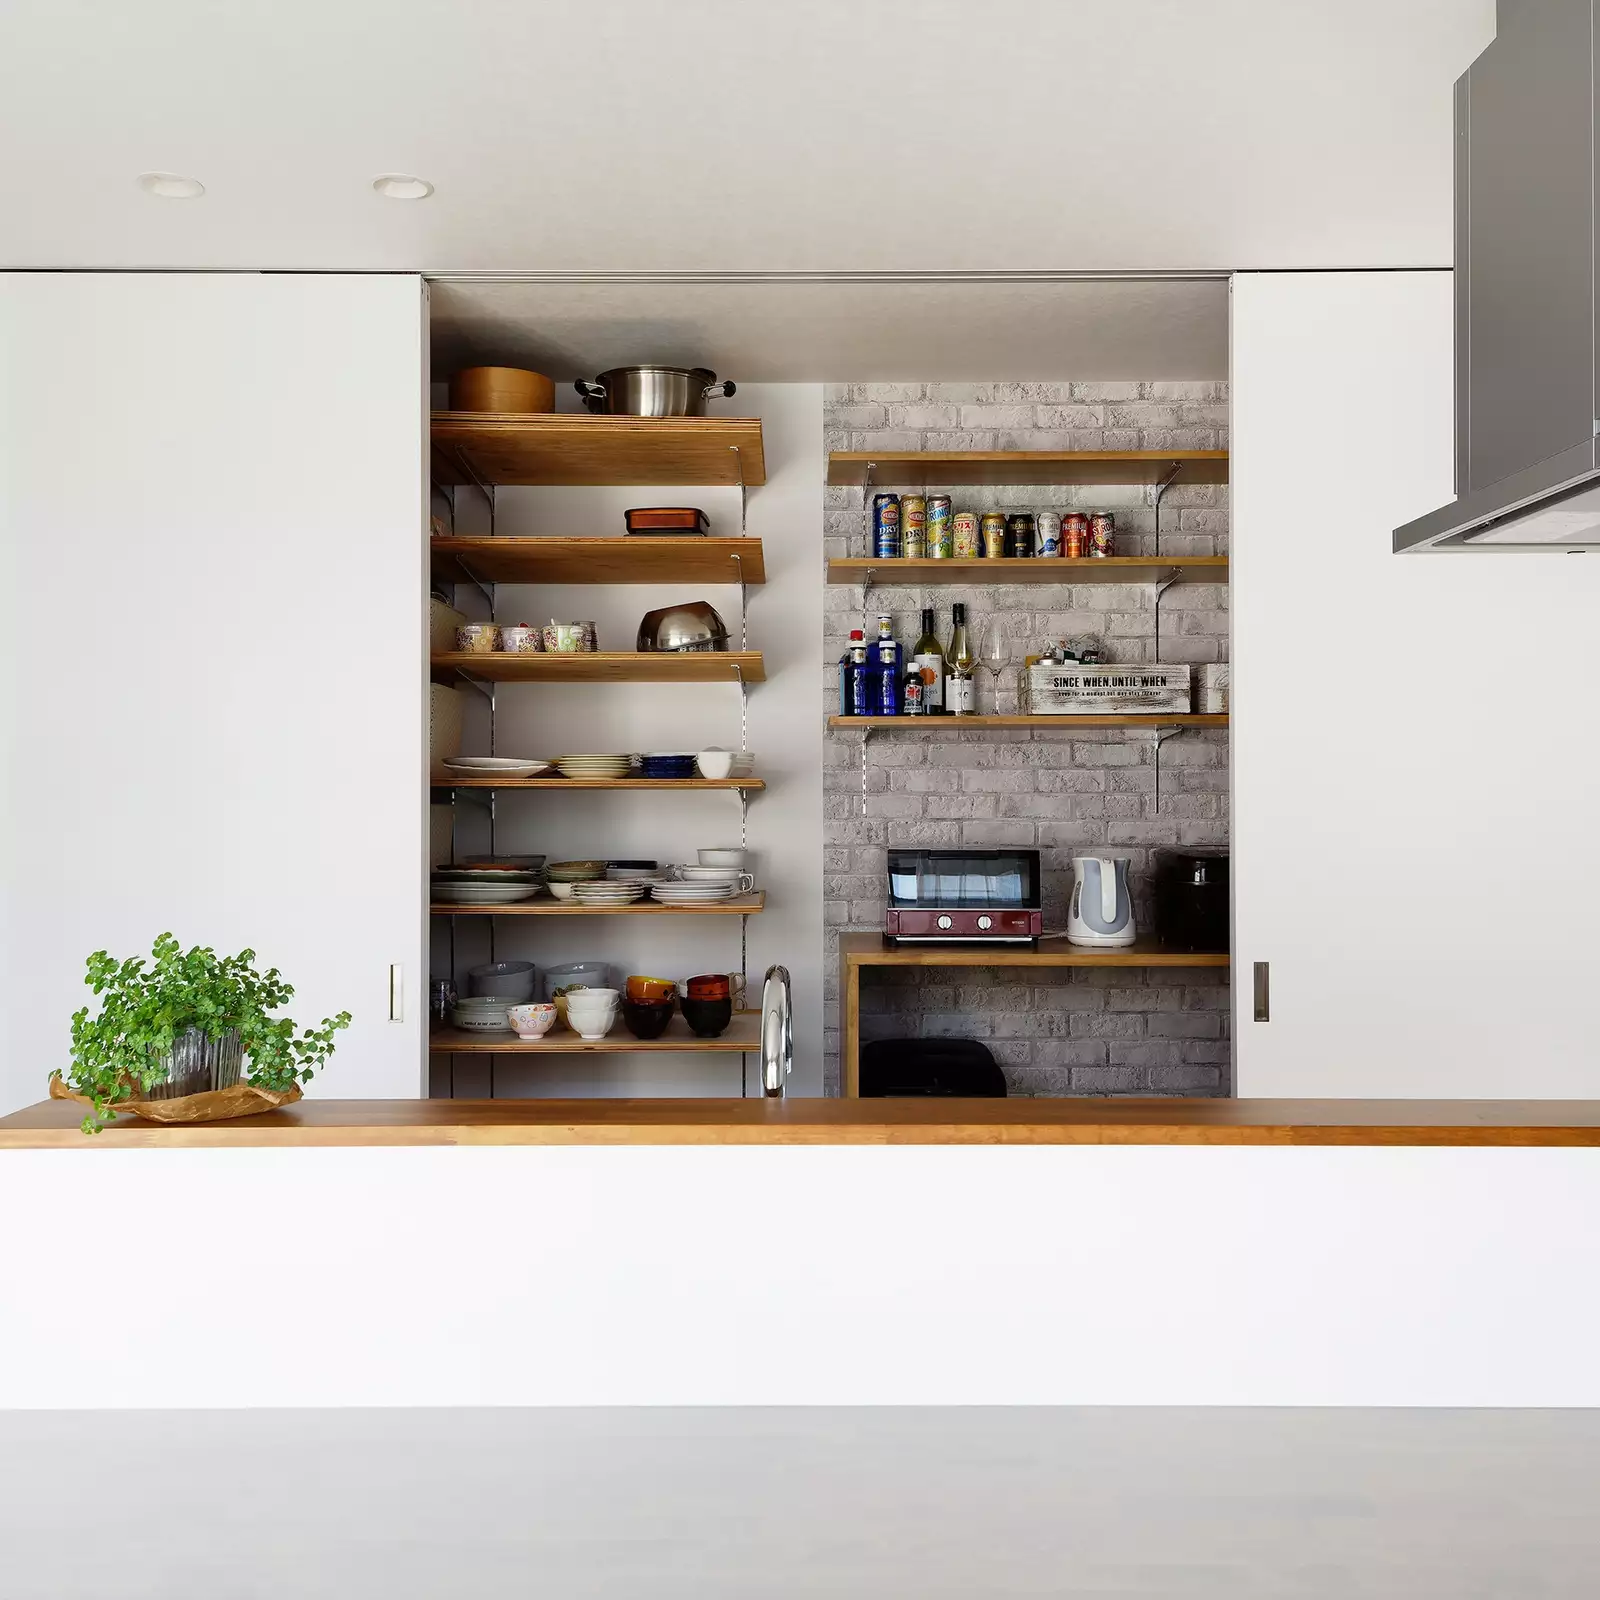 R+houseの物件のキッチンの背面収納の写真です。引き戸で隠したり見せたりできるおしゃれな収納